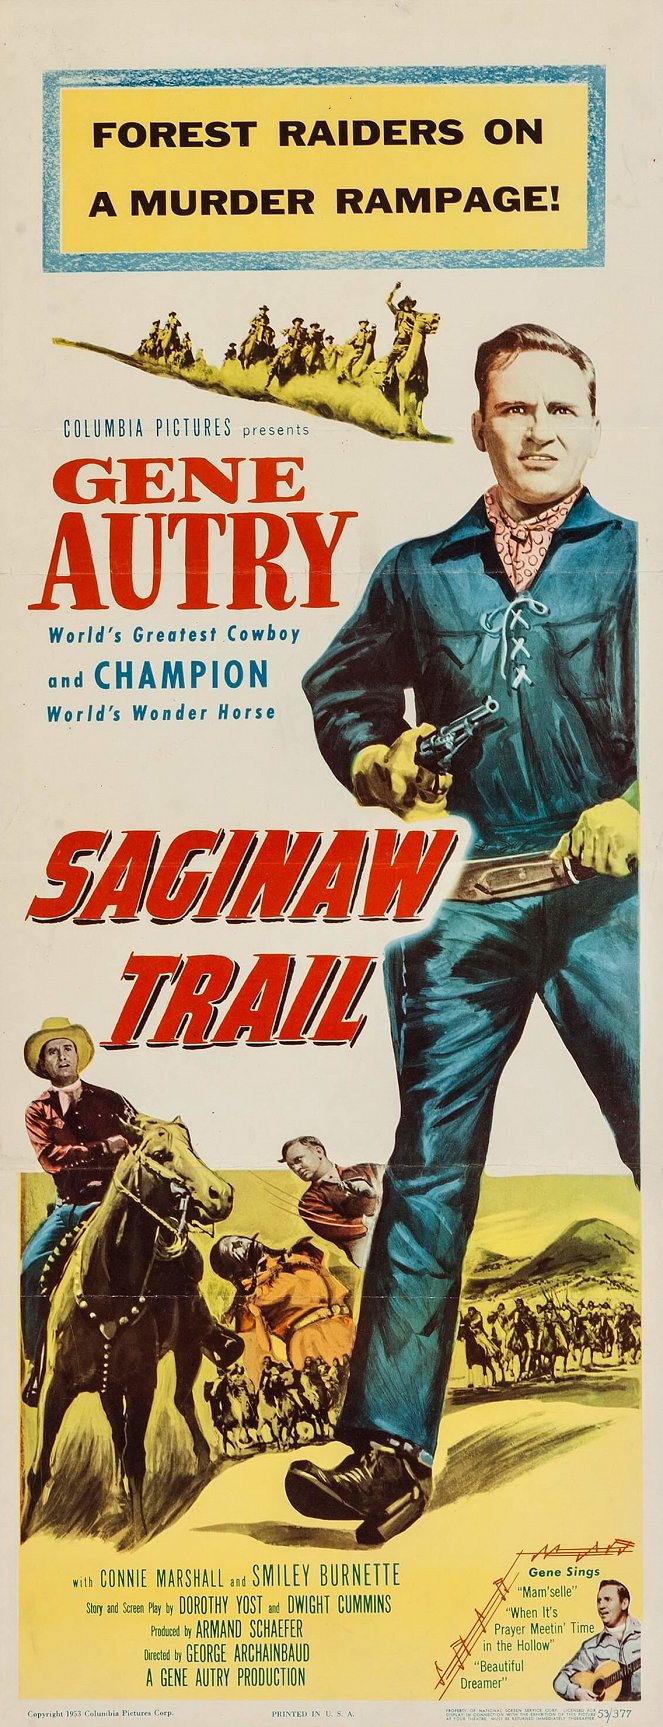 Saginaw Trail - Plakátok